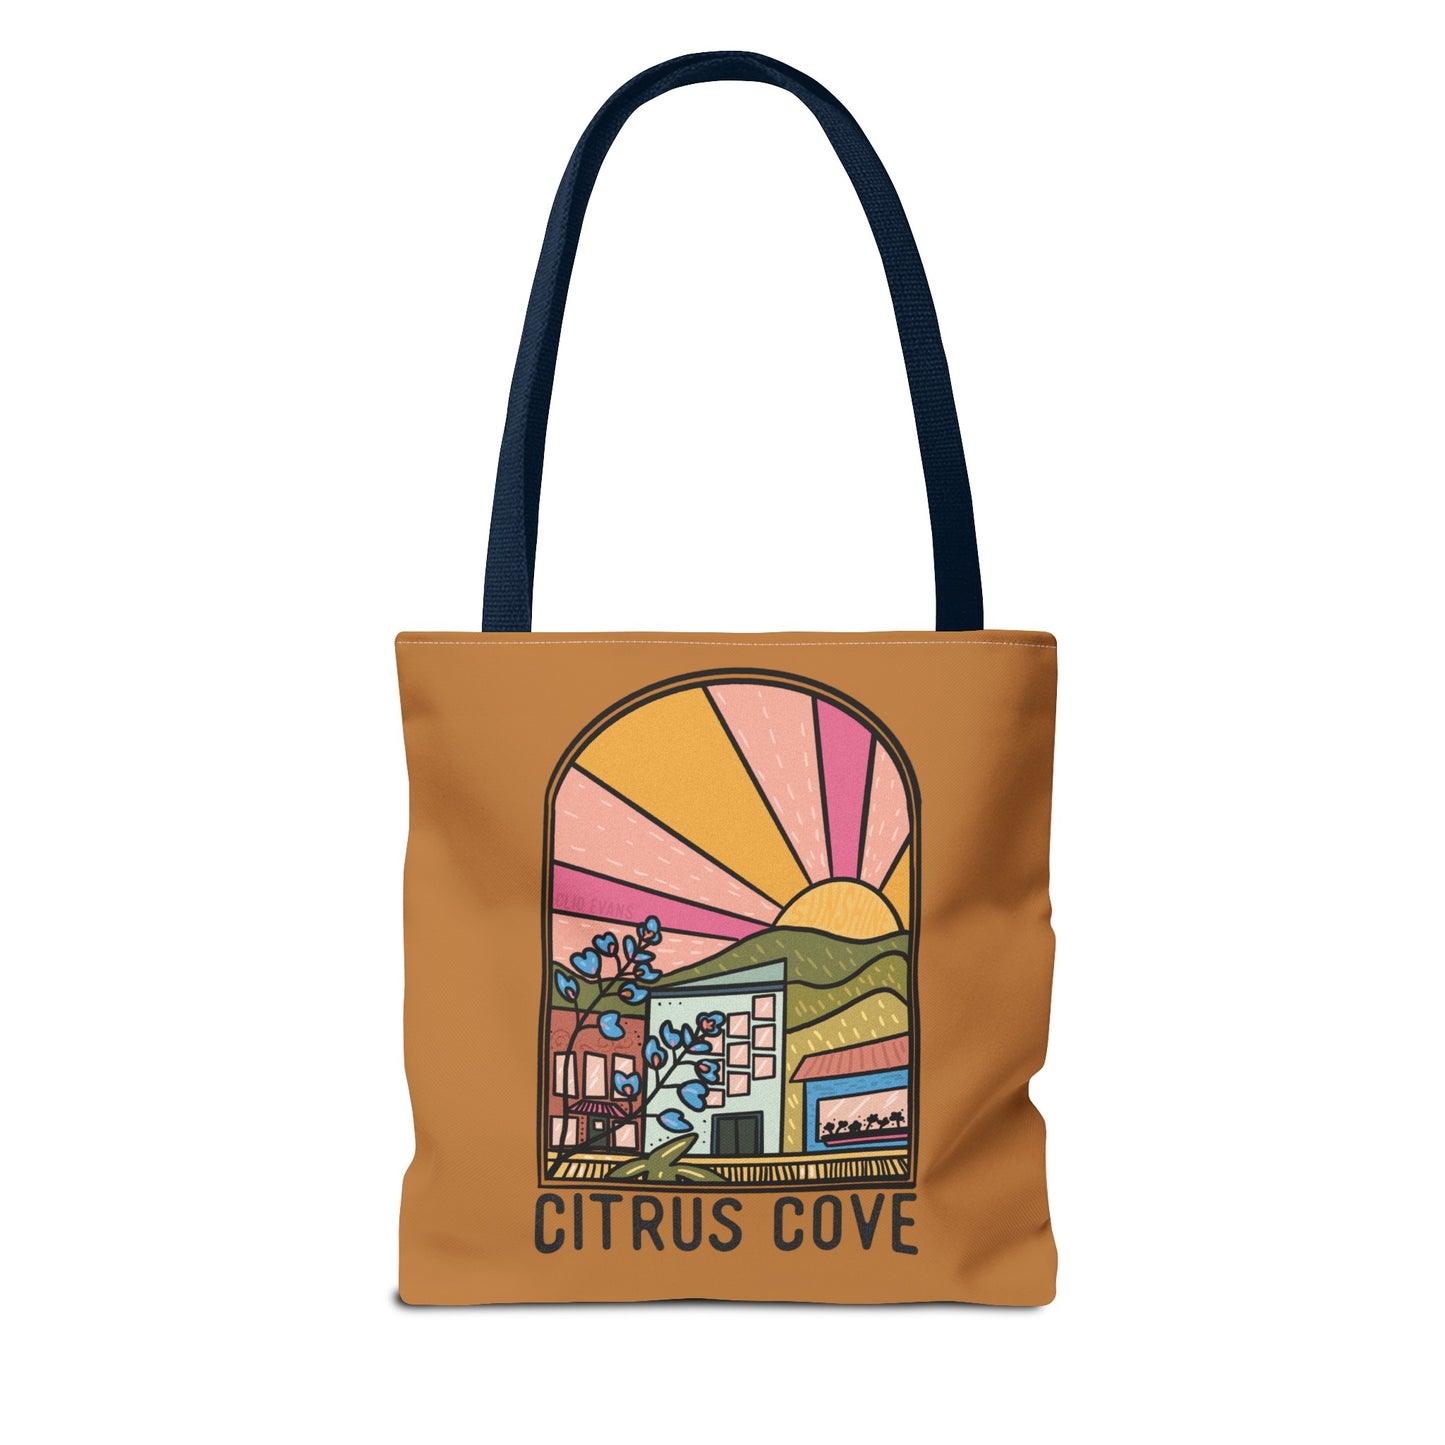 Citrus Cove Tote Bag